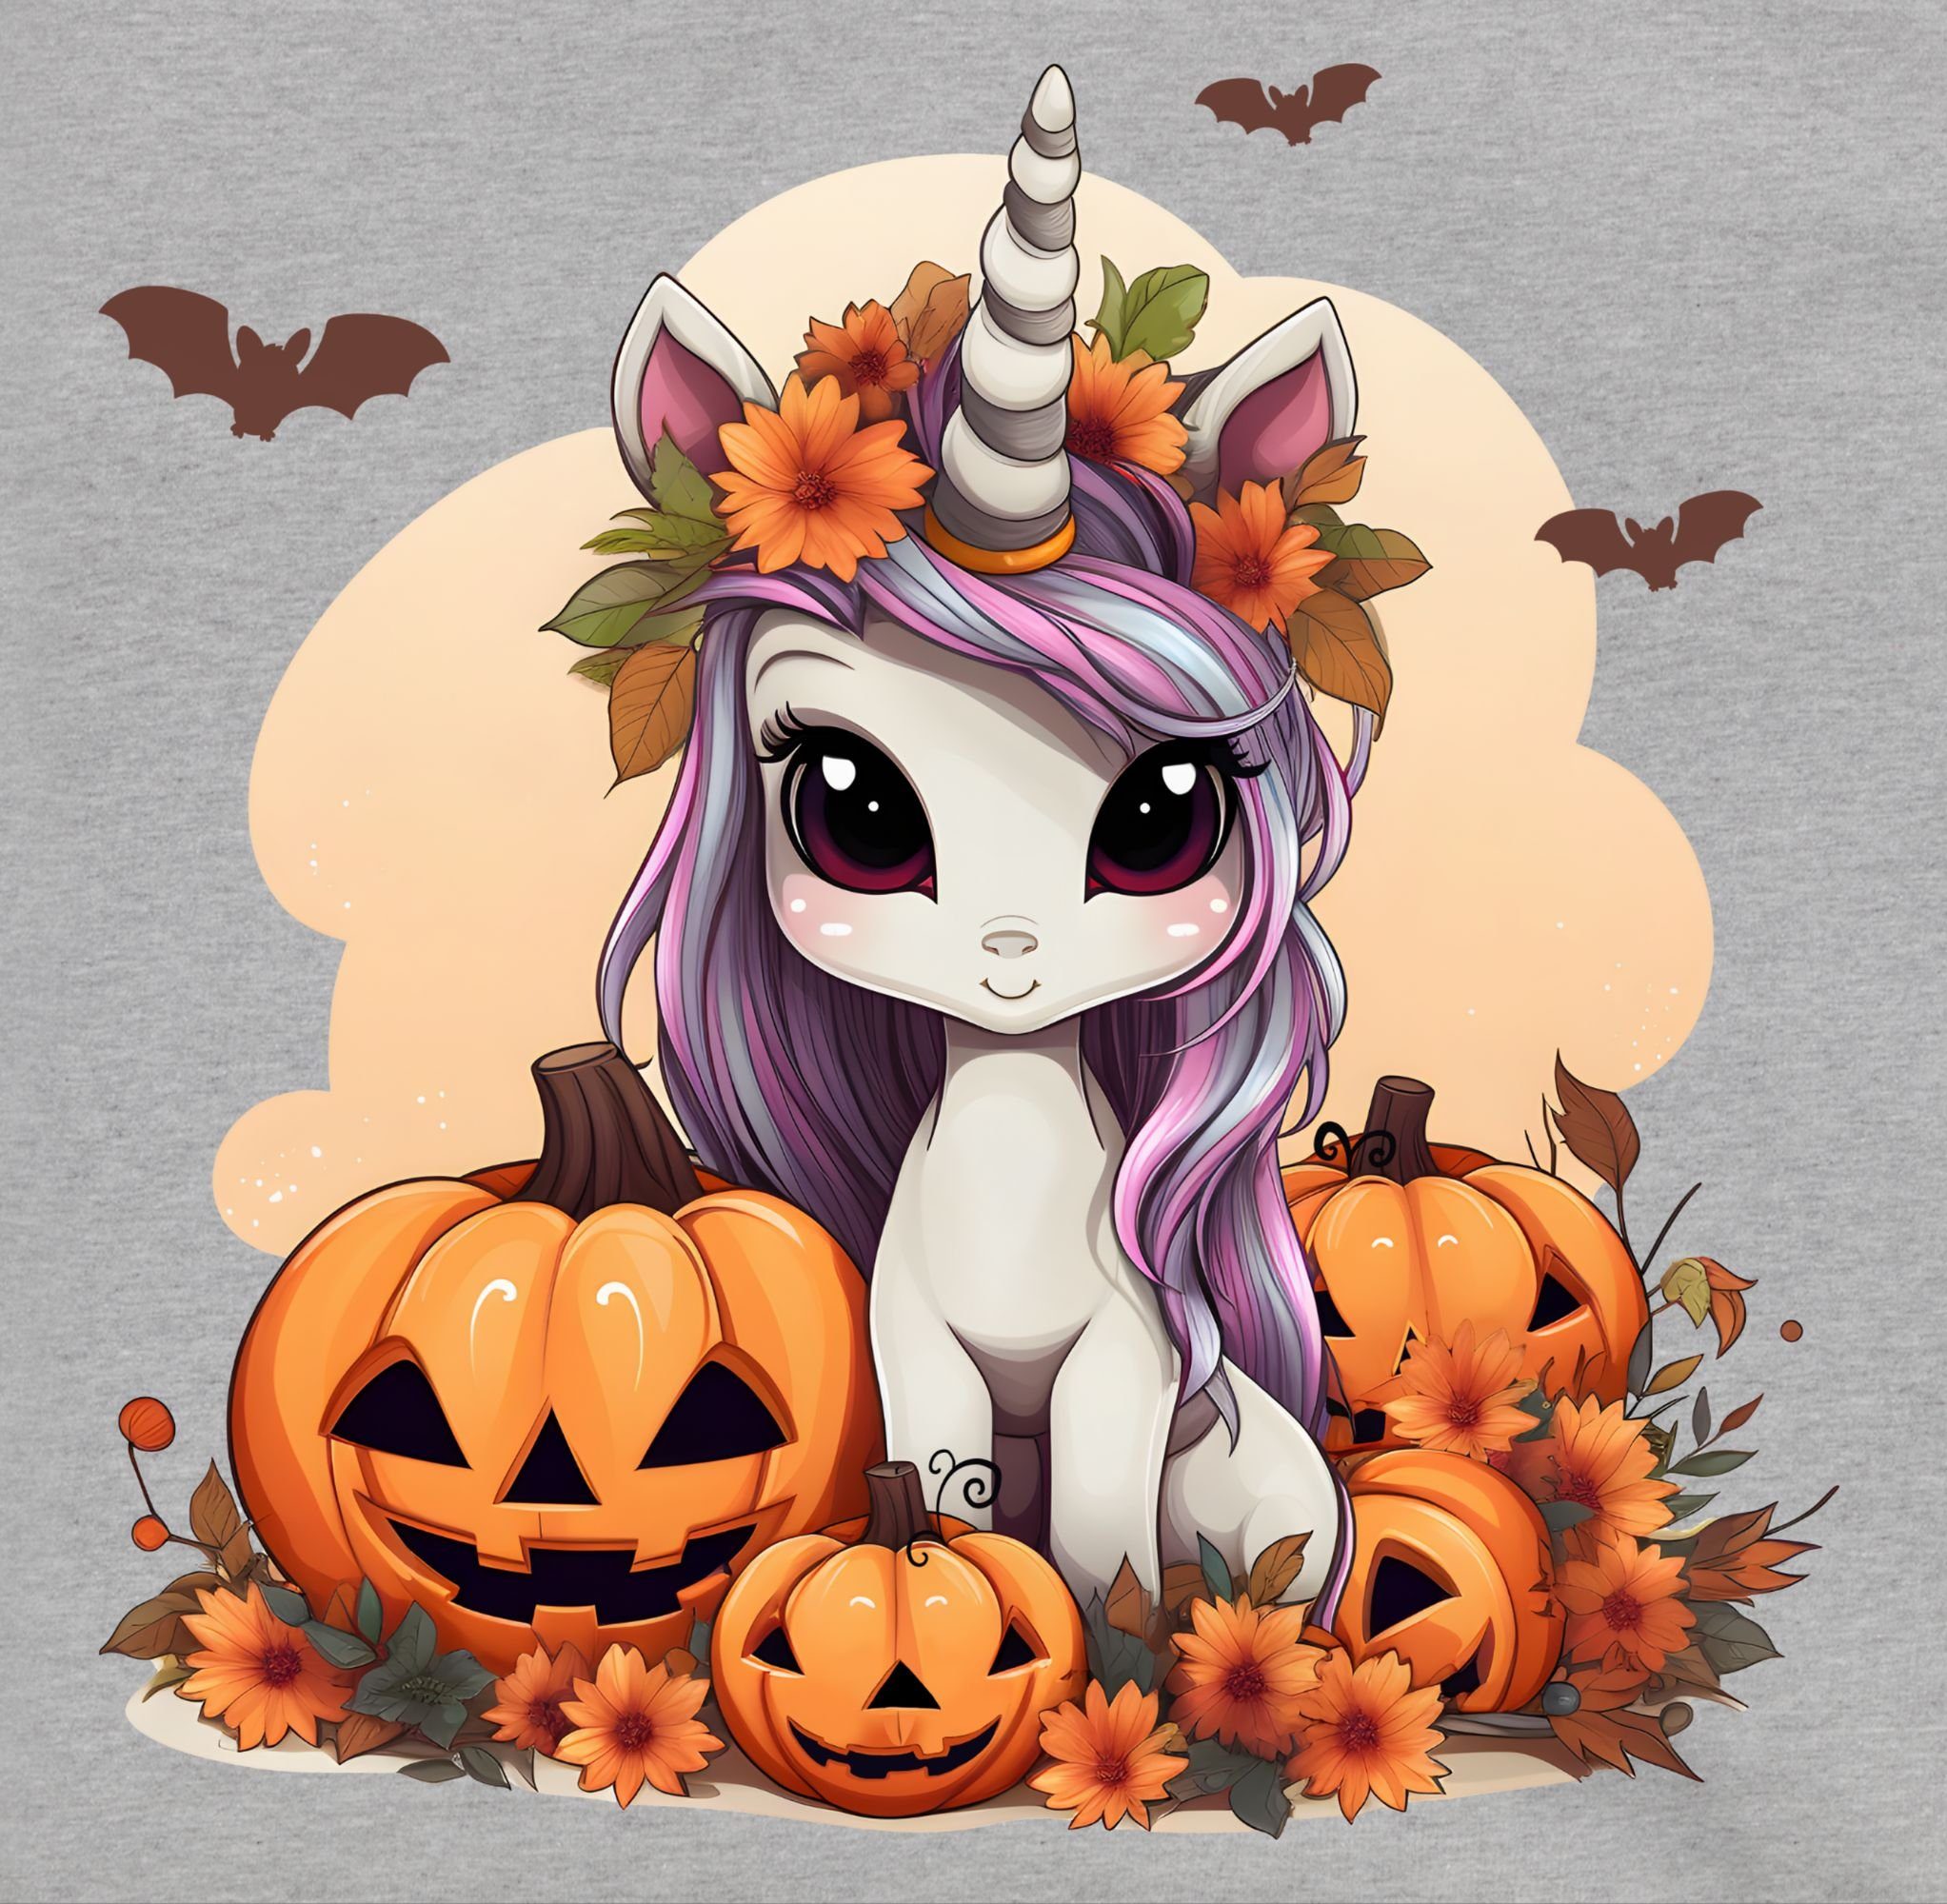 Süßes Kostüme Shirtracer Halloween Sweatshirt für 3 Unicorn meliert Kinder Einhorn Kürbis Grau Halloween